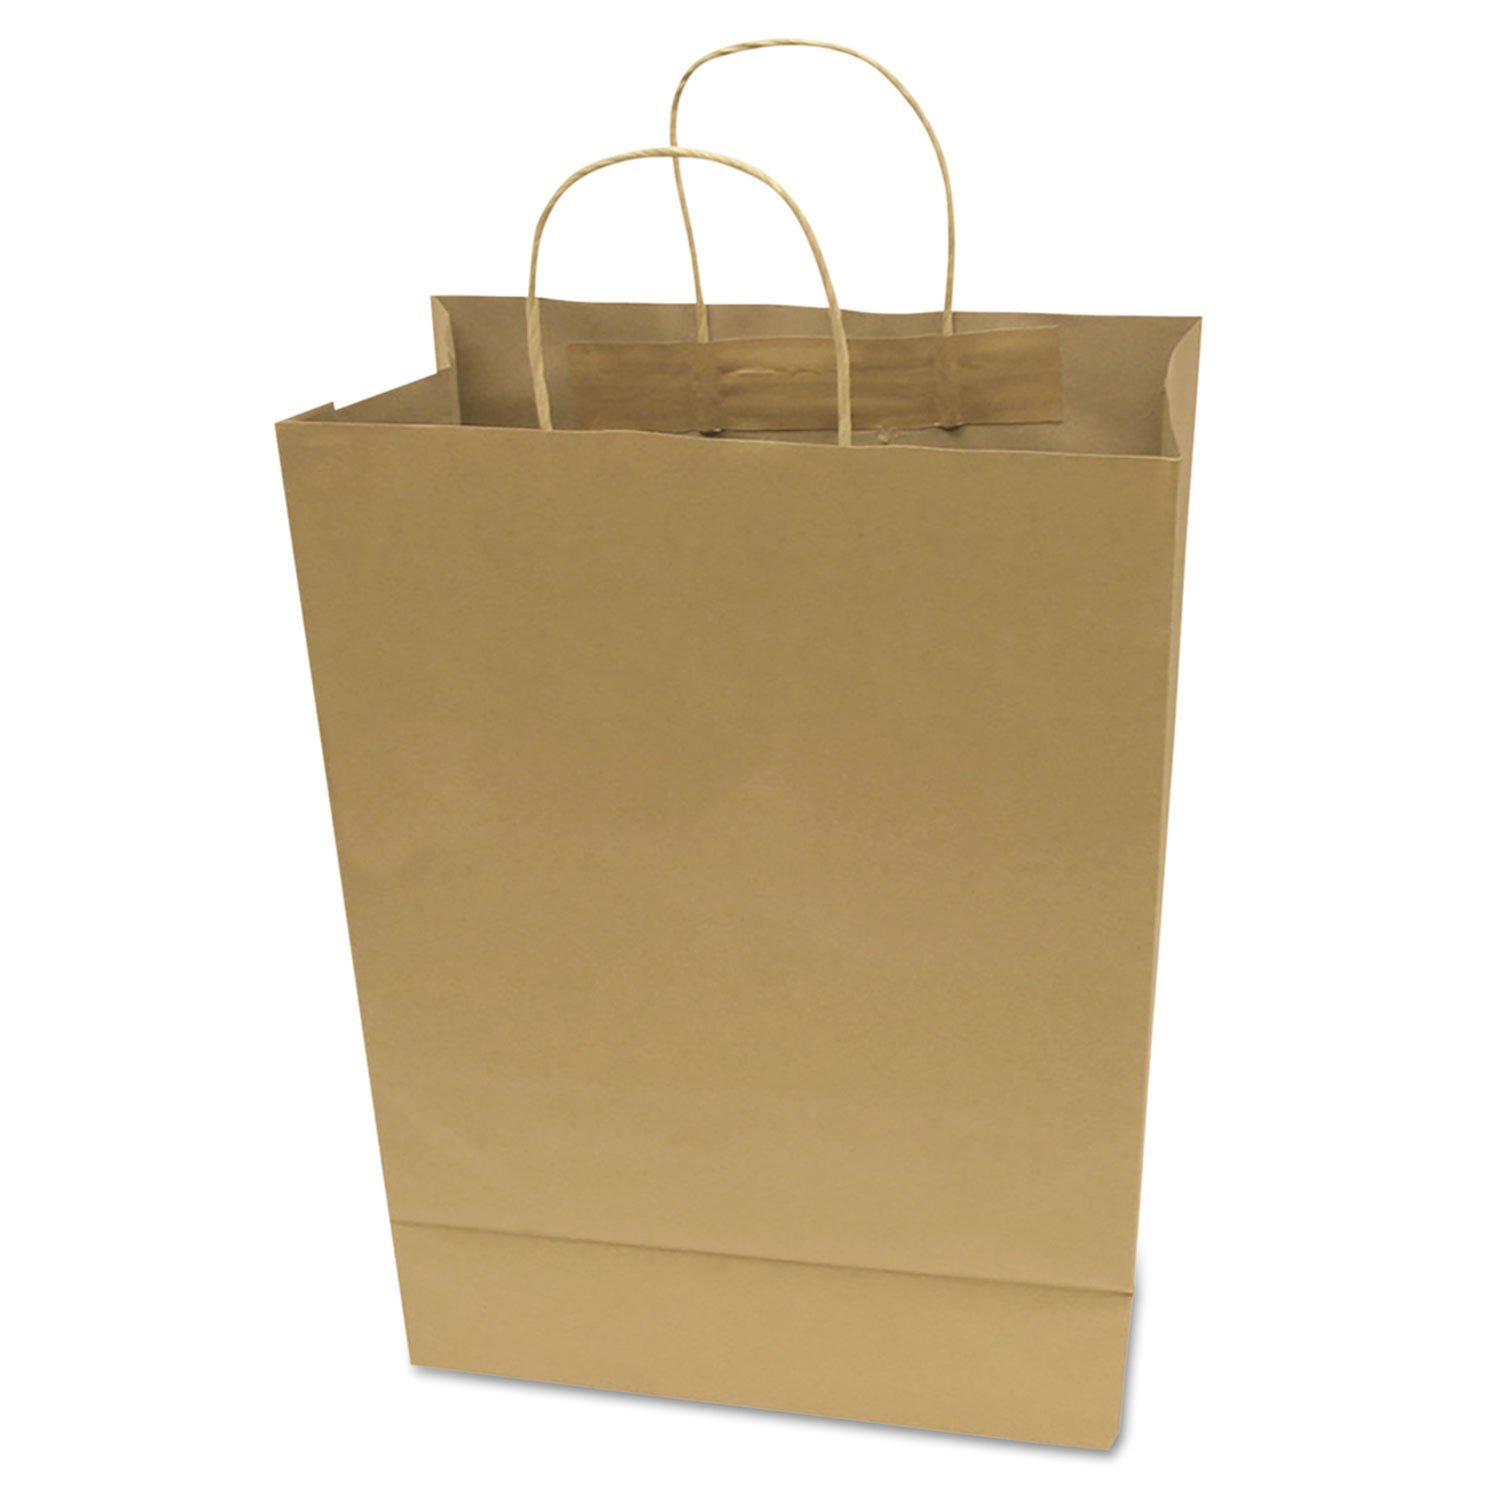 Amazon.com: COSCO Premium Small Brown Paper Shopping Bag, 50/Box ...